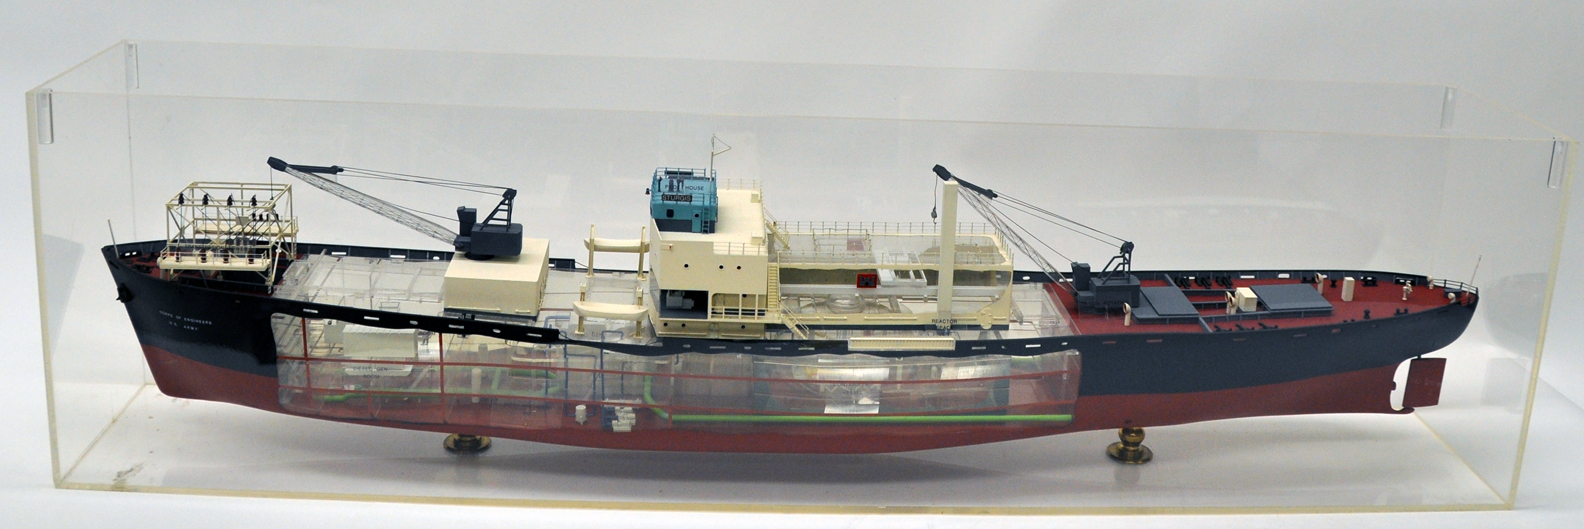 ship's model